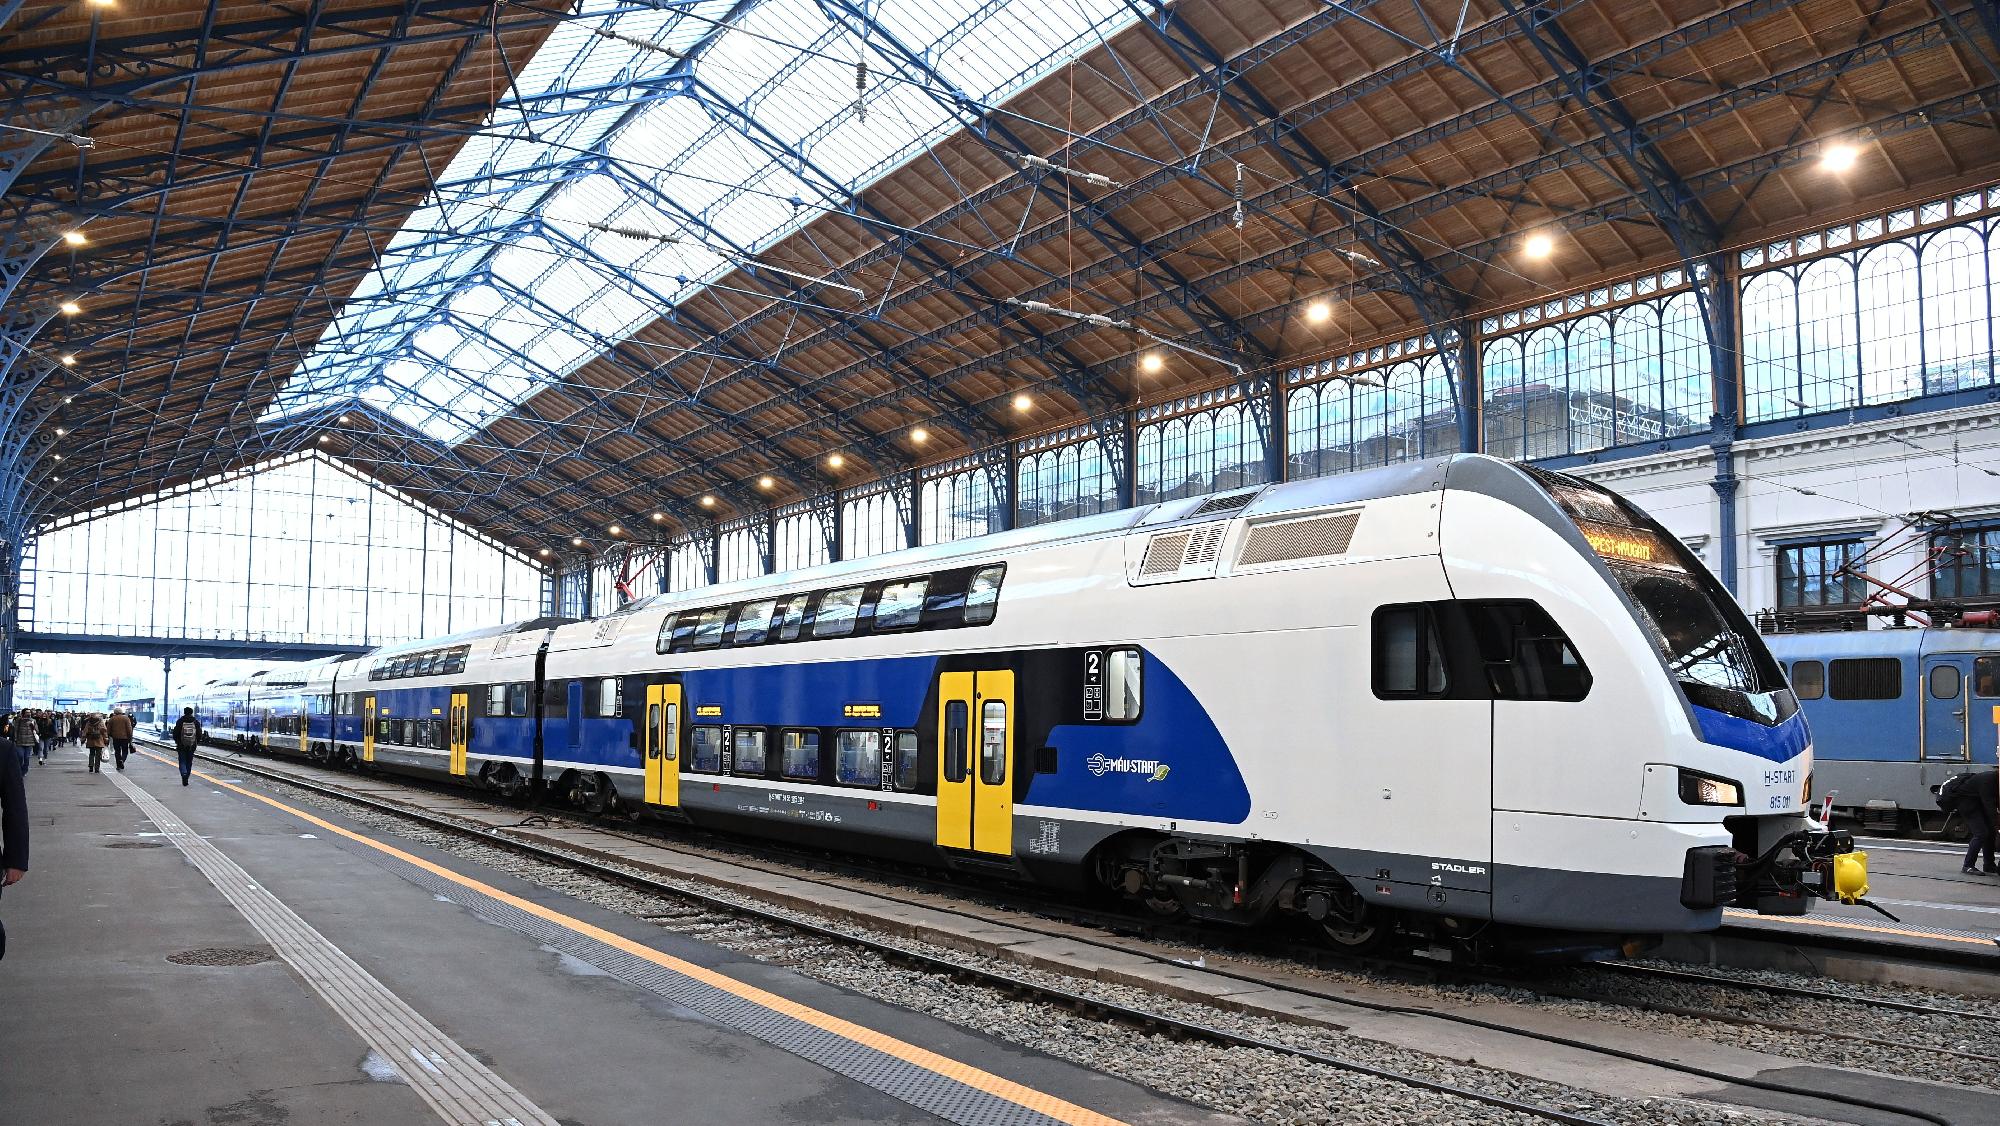 Elindult az első emeletes vonatjárat Esztergom és Budapest k?